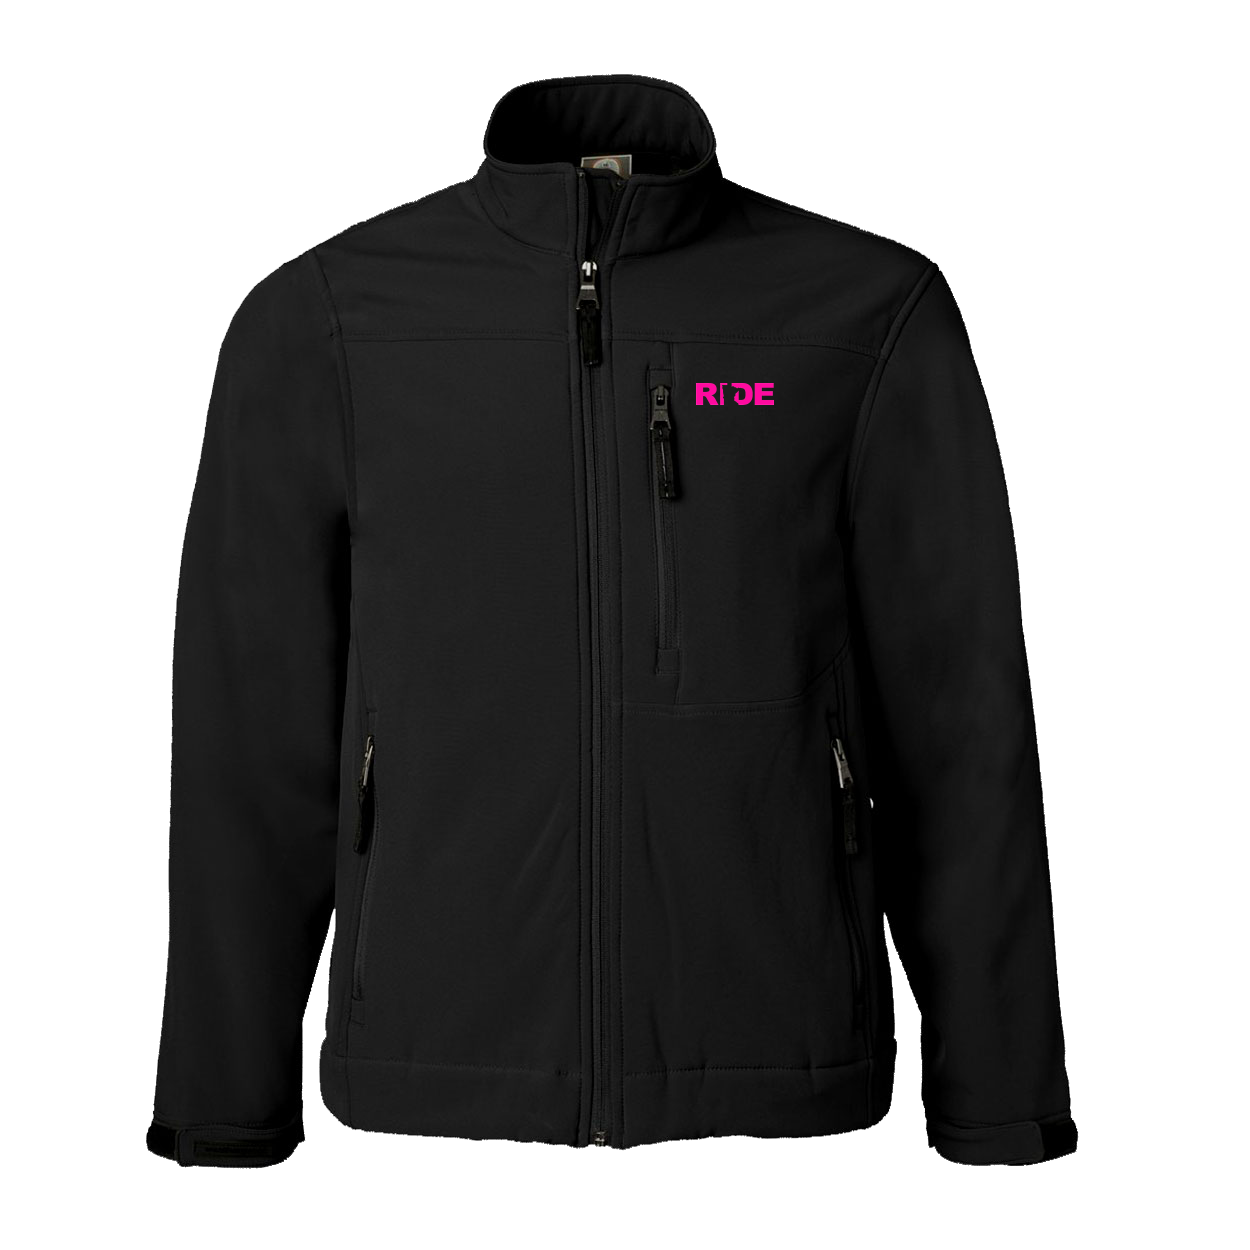 420 Brand Logo Classic Soft Shell Weatherproof Jacket (Pink Logo)